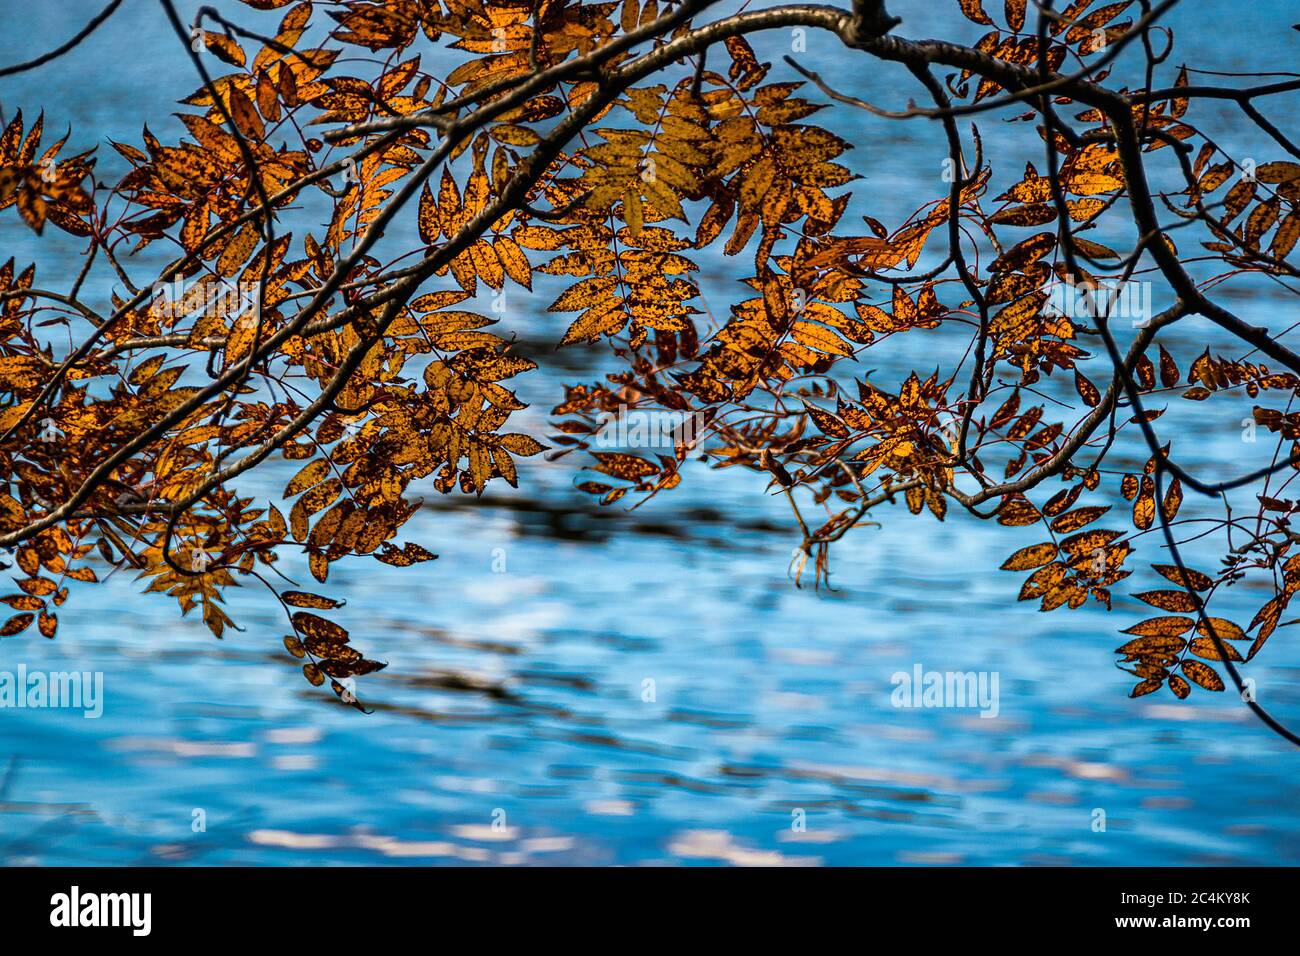 Branche arborescente avec feuillage coloré surplombant les eaux bleues du lac Chuzenji (Nikko, Japon). Automne nature résumé fond. Banque D'Images